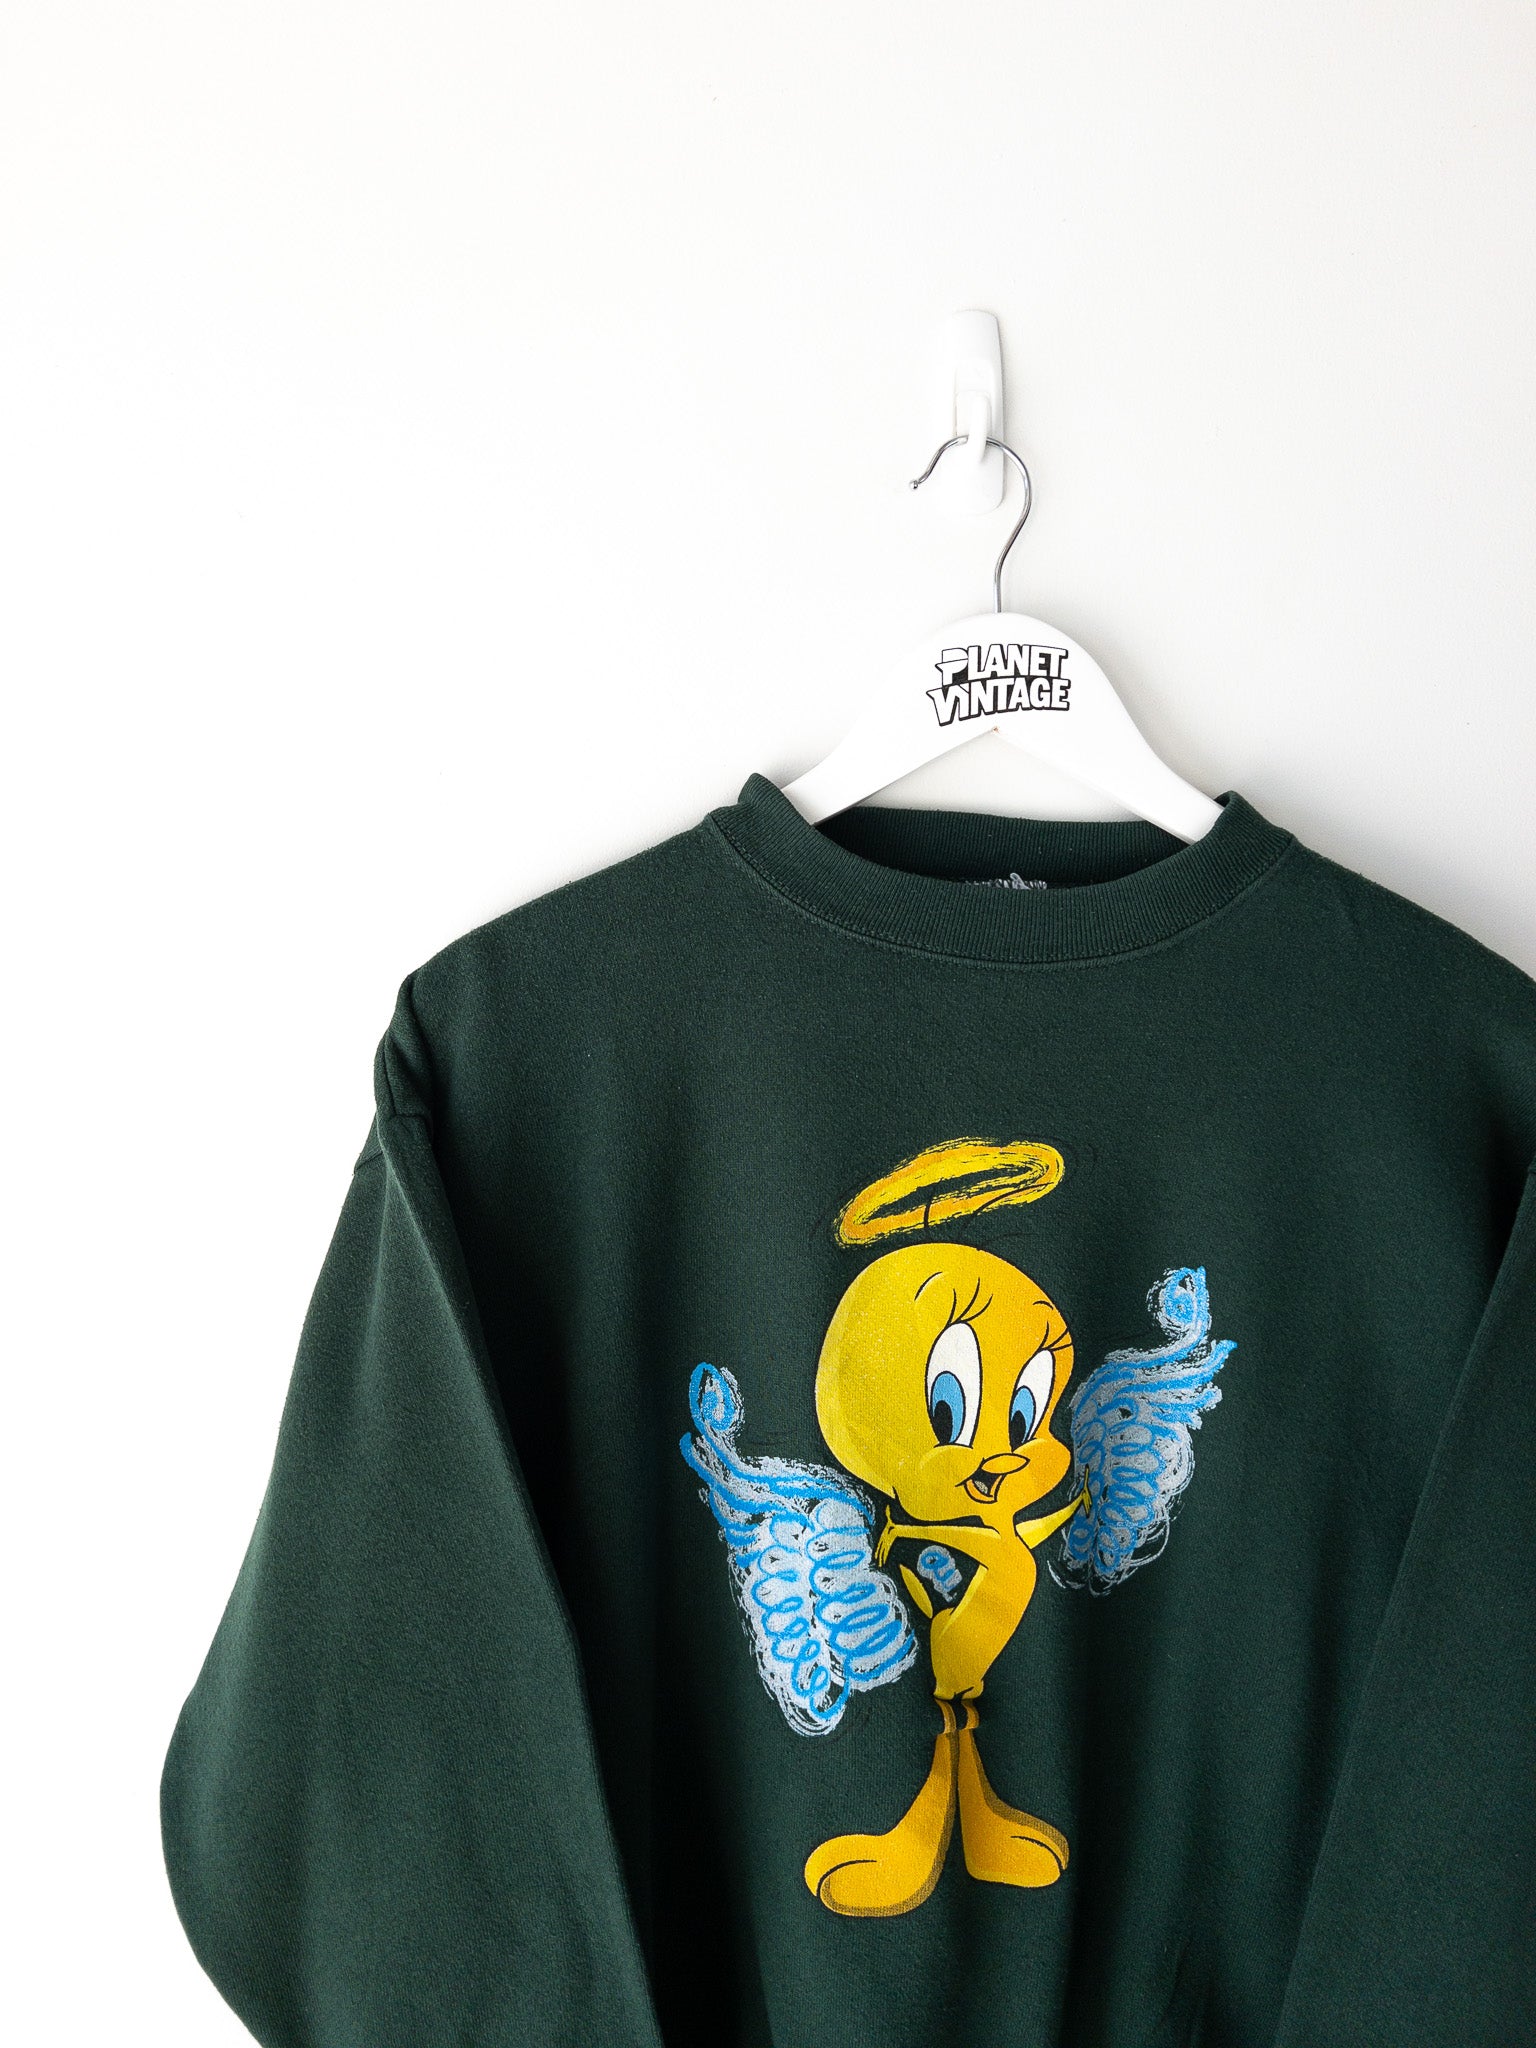 Vintage Tweety Sweatshirt (M)